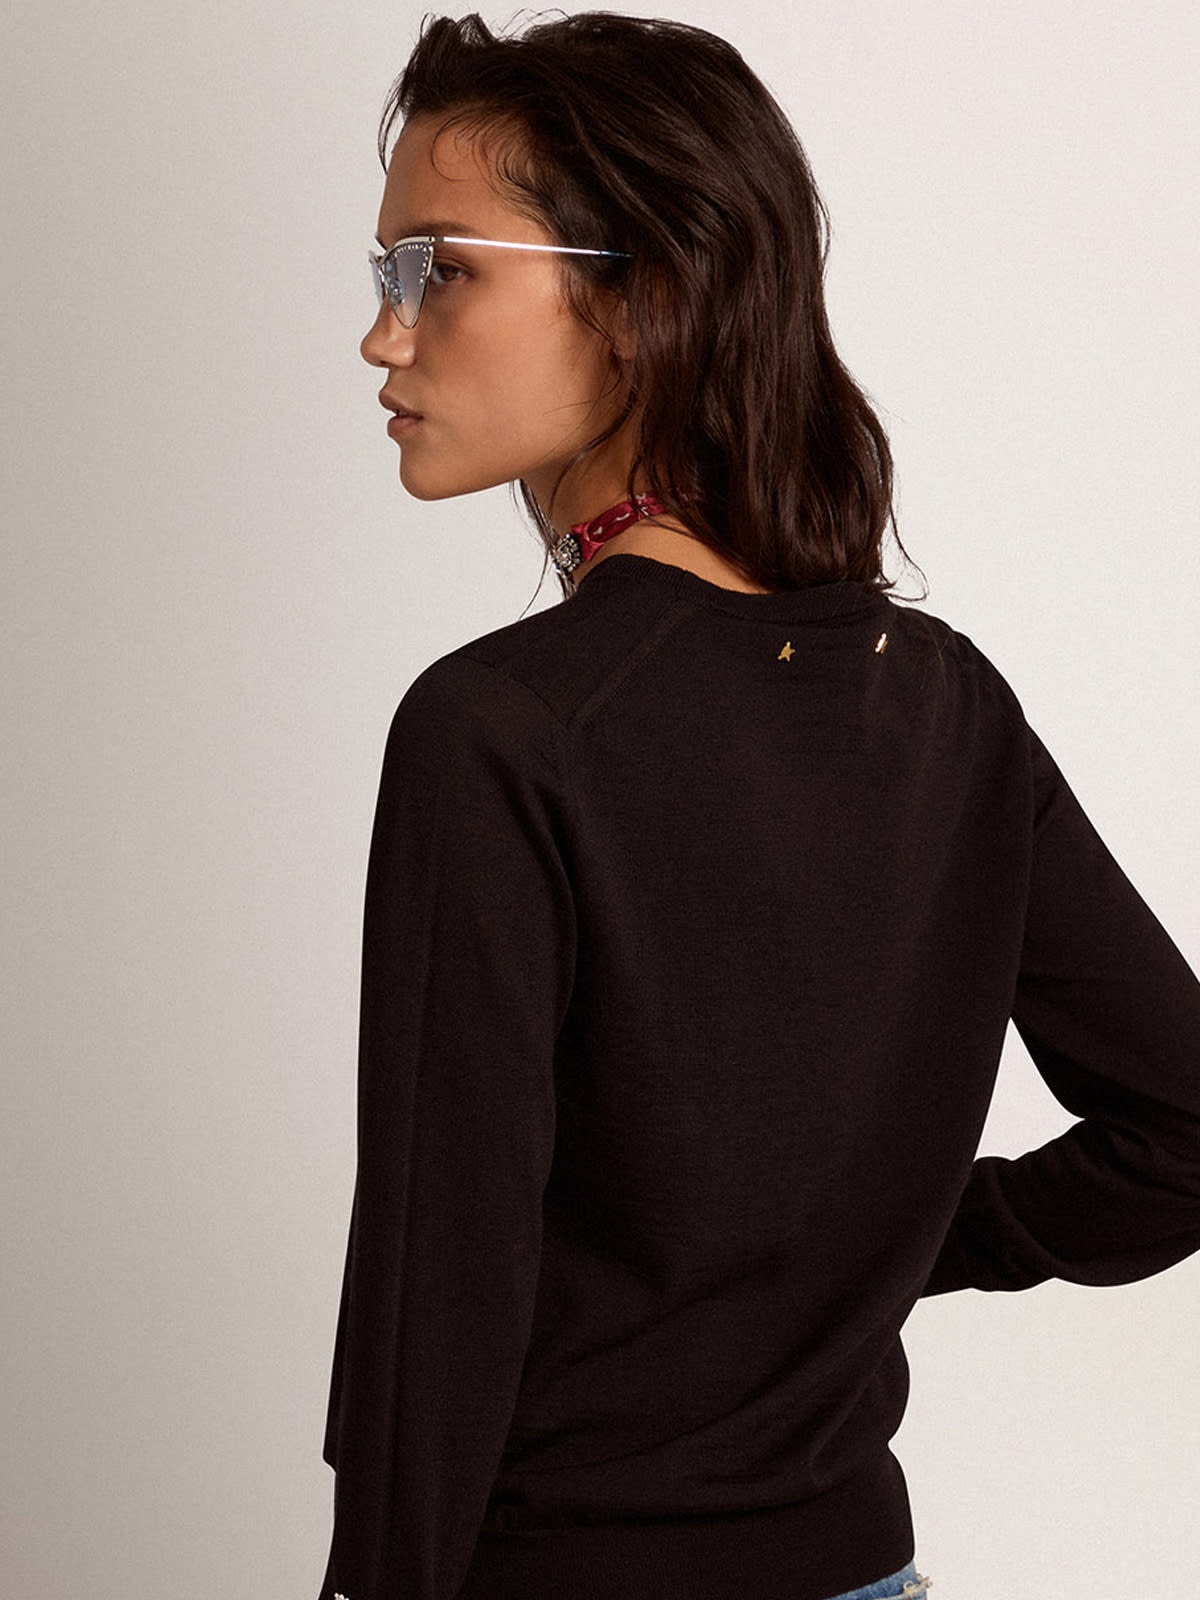 Women's round-neck sweater in black wool - 4